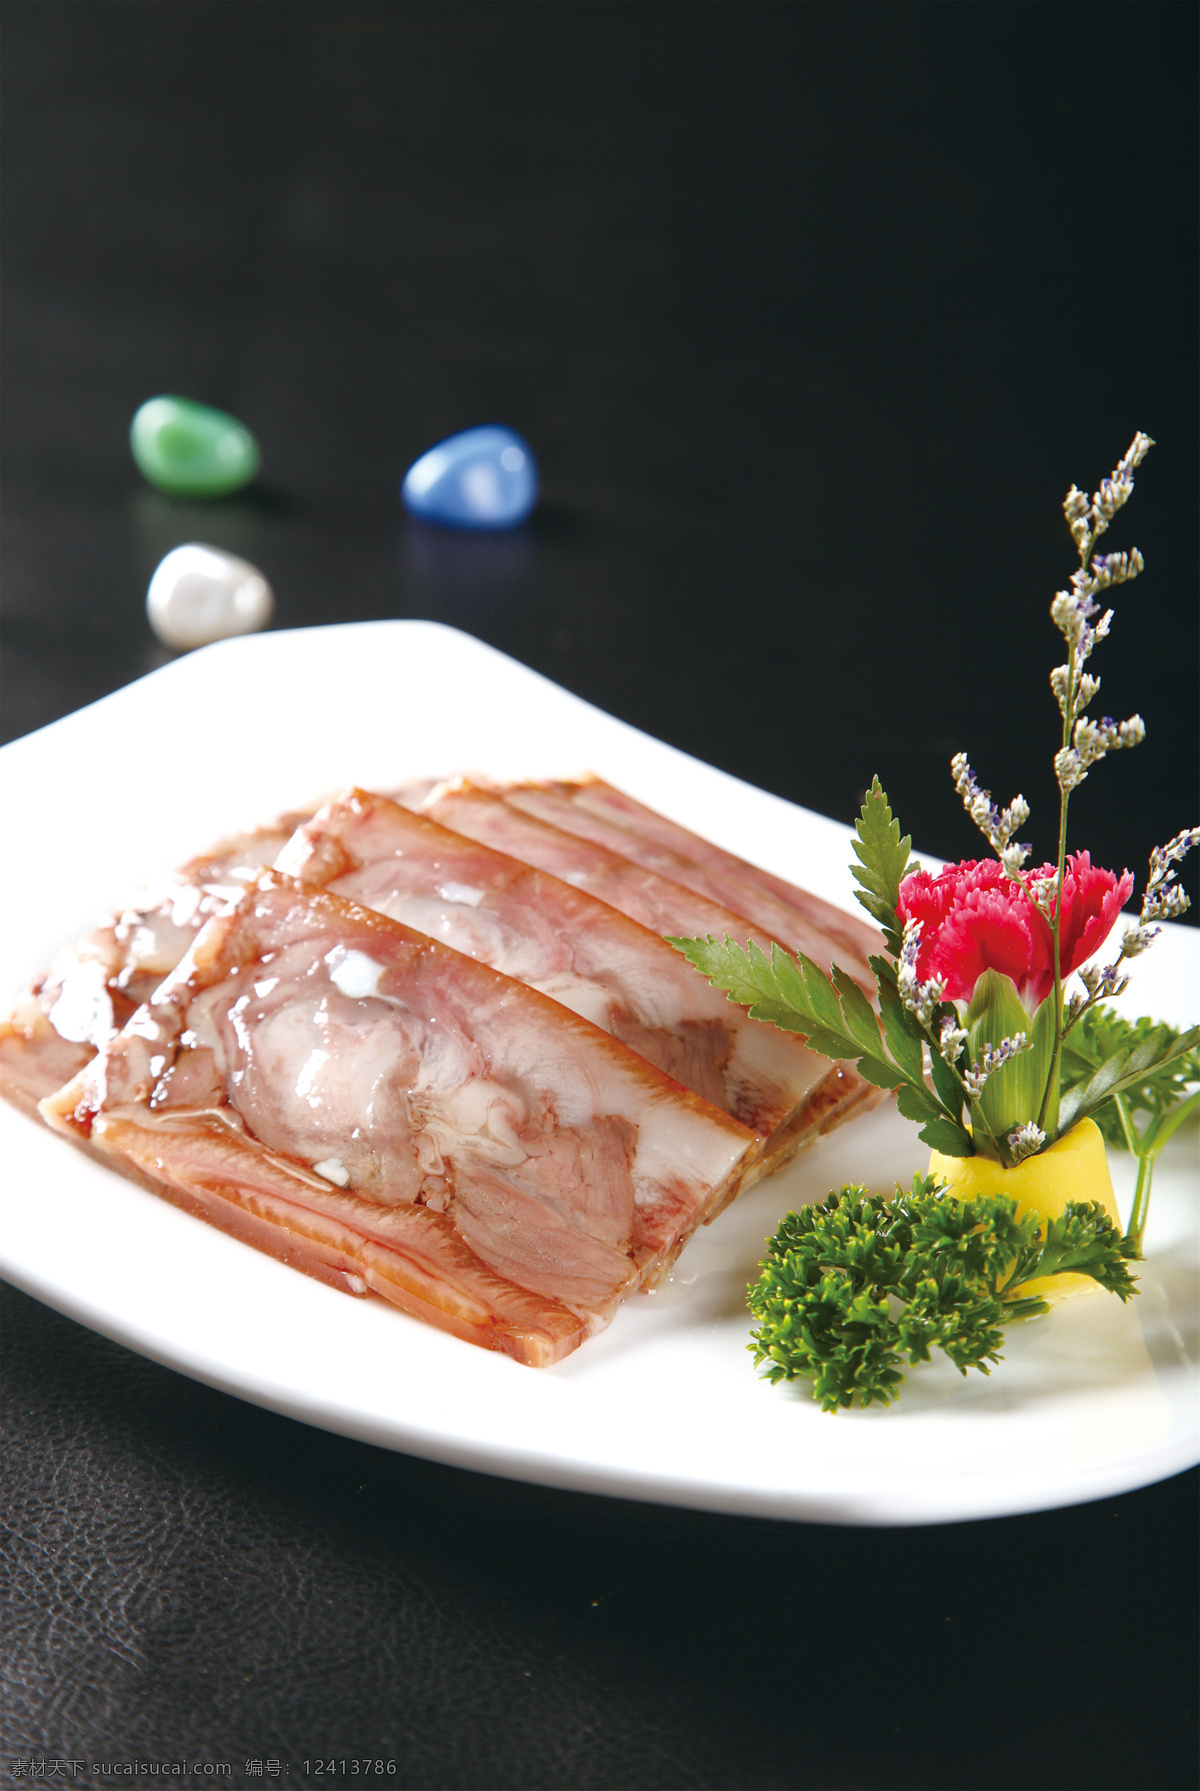 酱香 猪头肉 酱香猪头肉 美食 传统美食 餐饮美食 高清菜谱用图